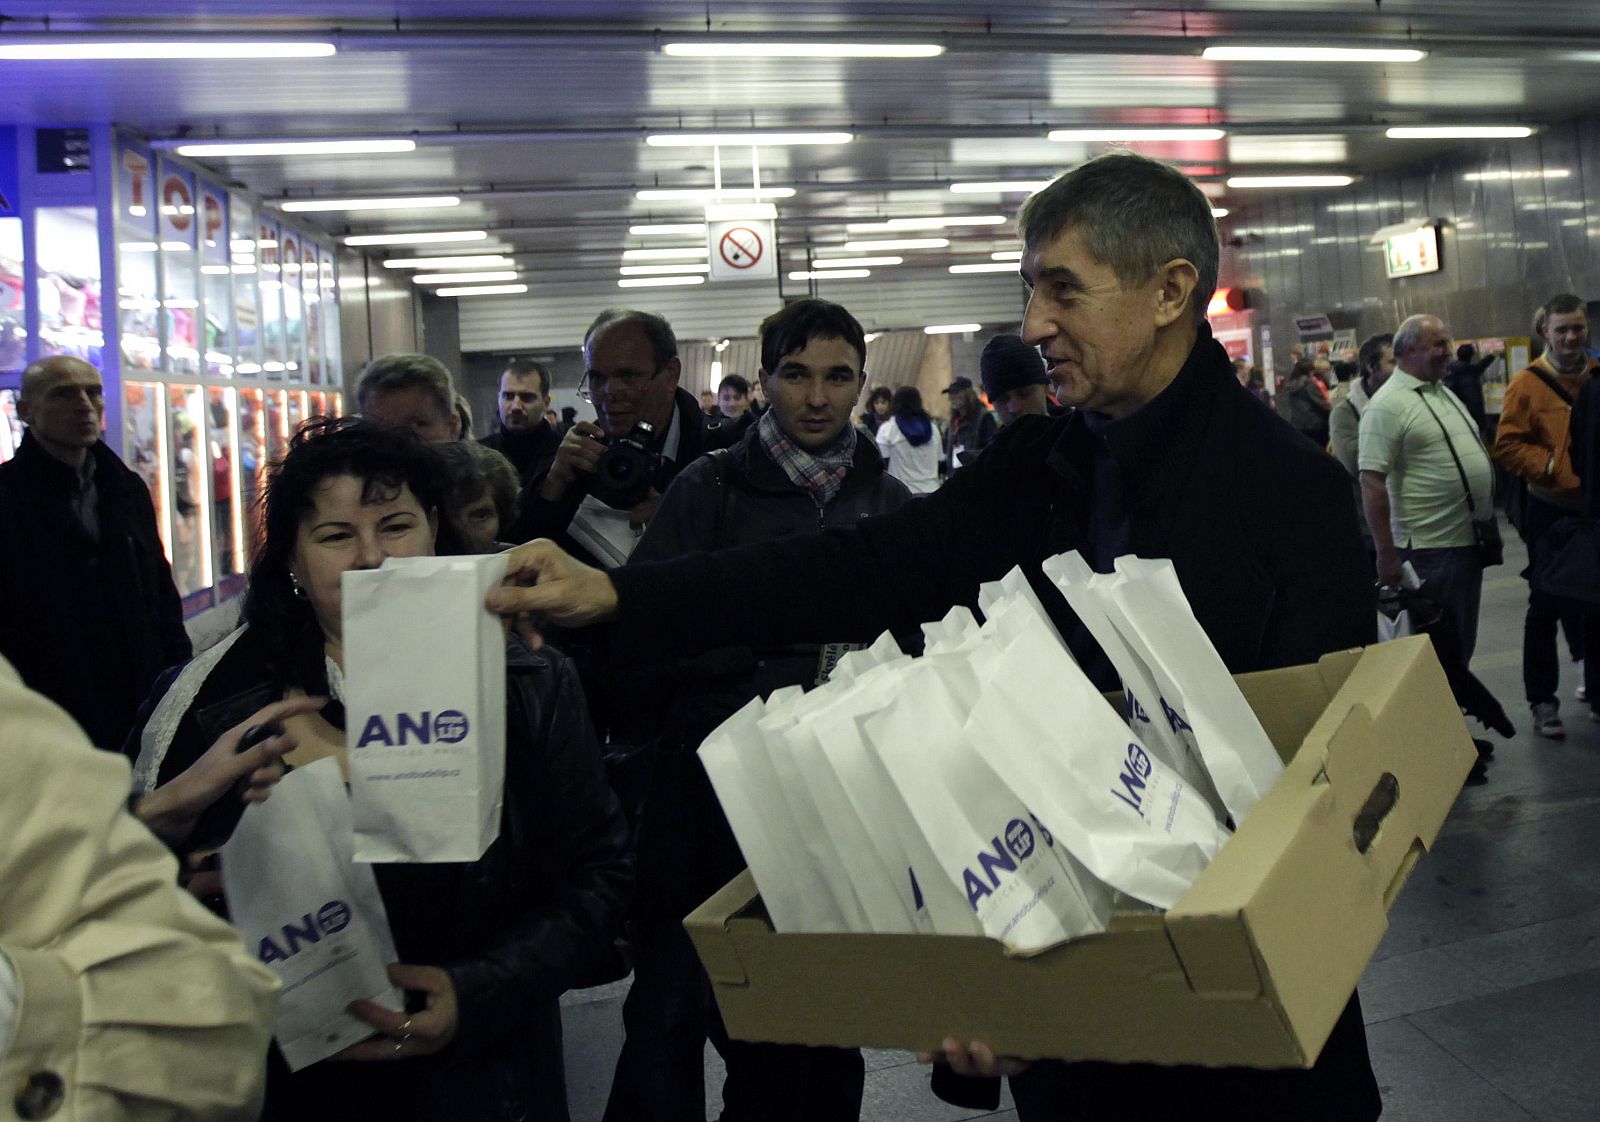 Andrej Babis, lider del partido ANO 2011, reparte bollos en el metro de Praga